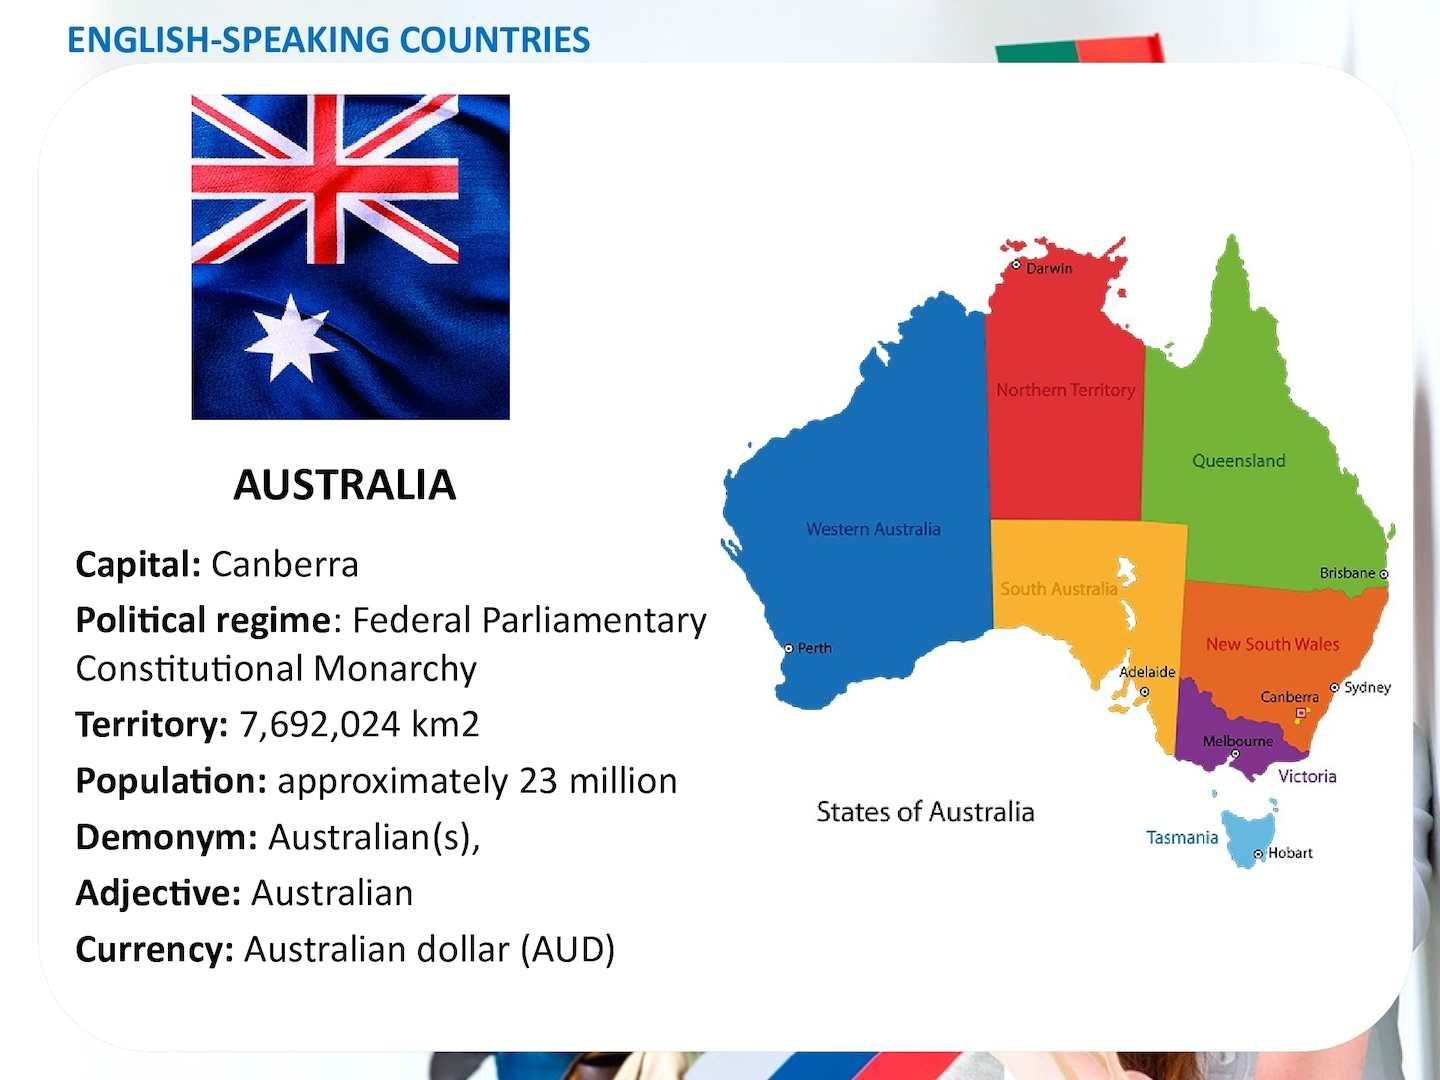 Население говорящее на английском. Англоязычные страны. Проект English speaking Countries. Англоговорящие страны на карте. Англоговорящие страны Австралия.